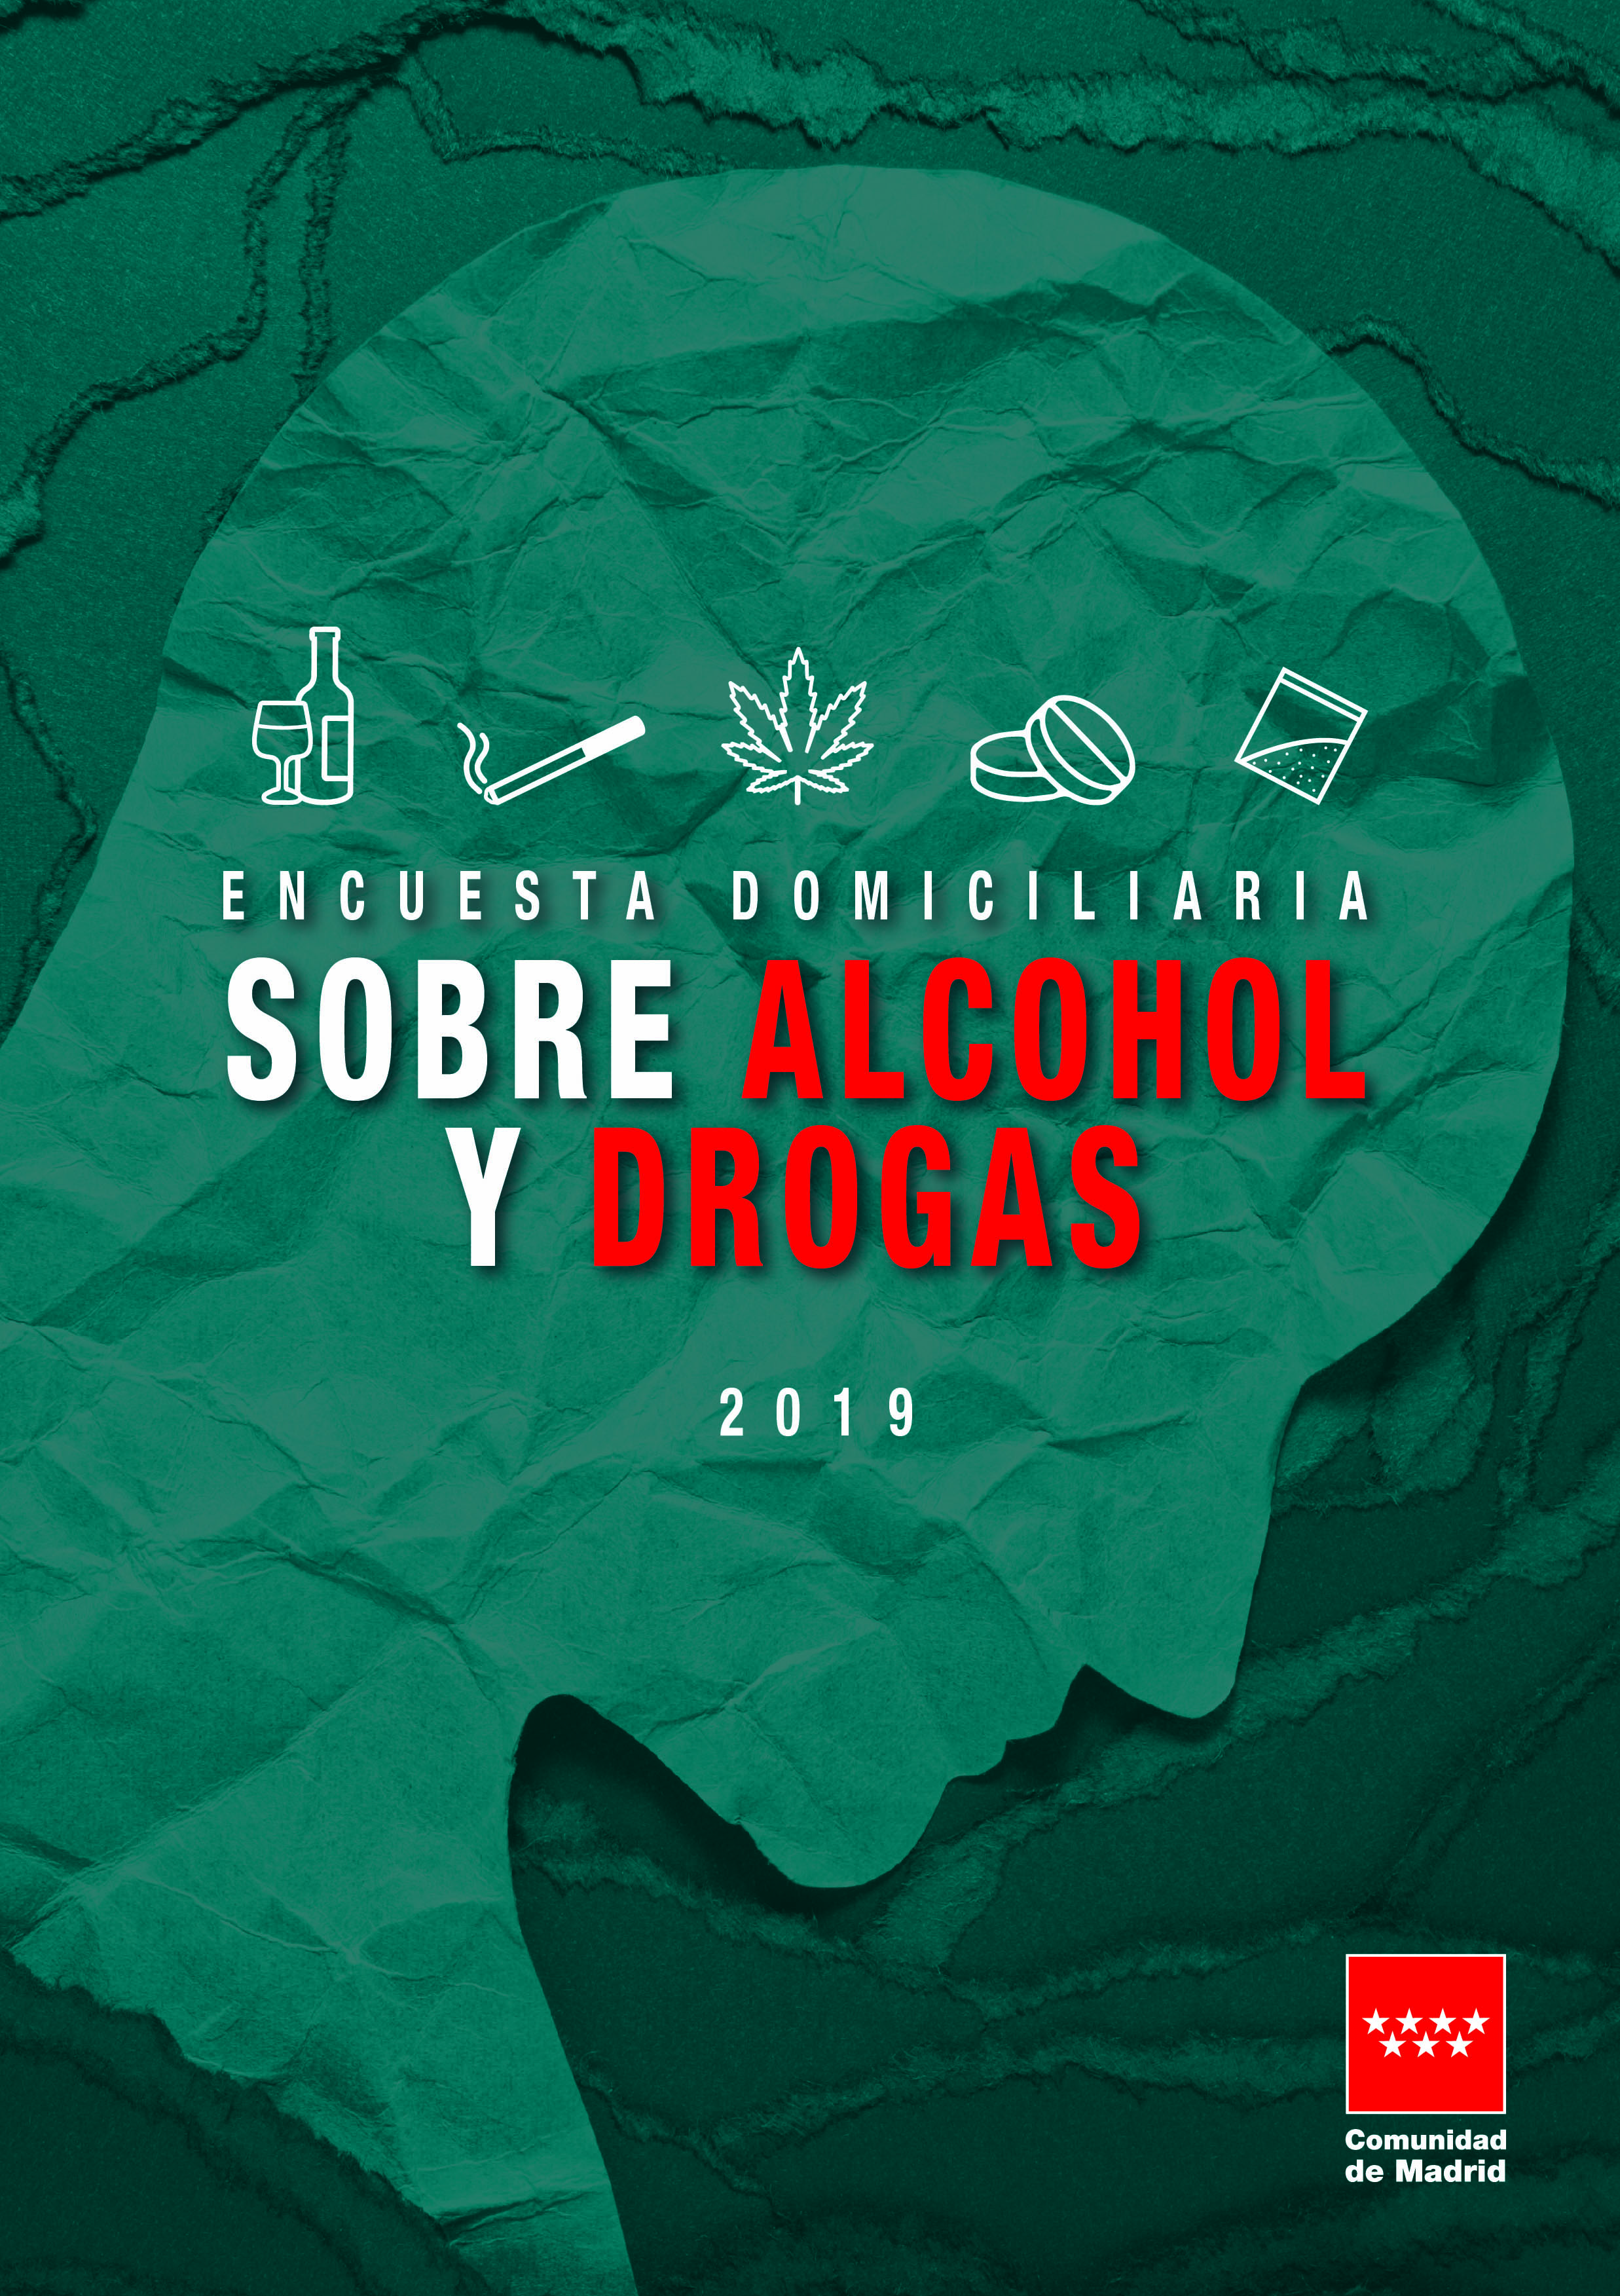 Portada de Encuesta domiciliaria sobre alcohol y otras drogas en la Comunidad de Madrid. Año 2019